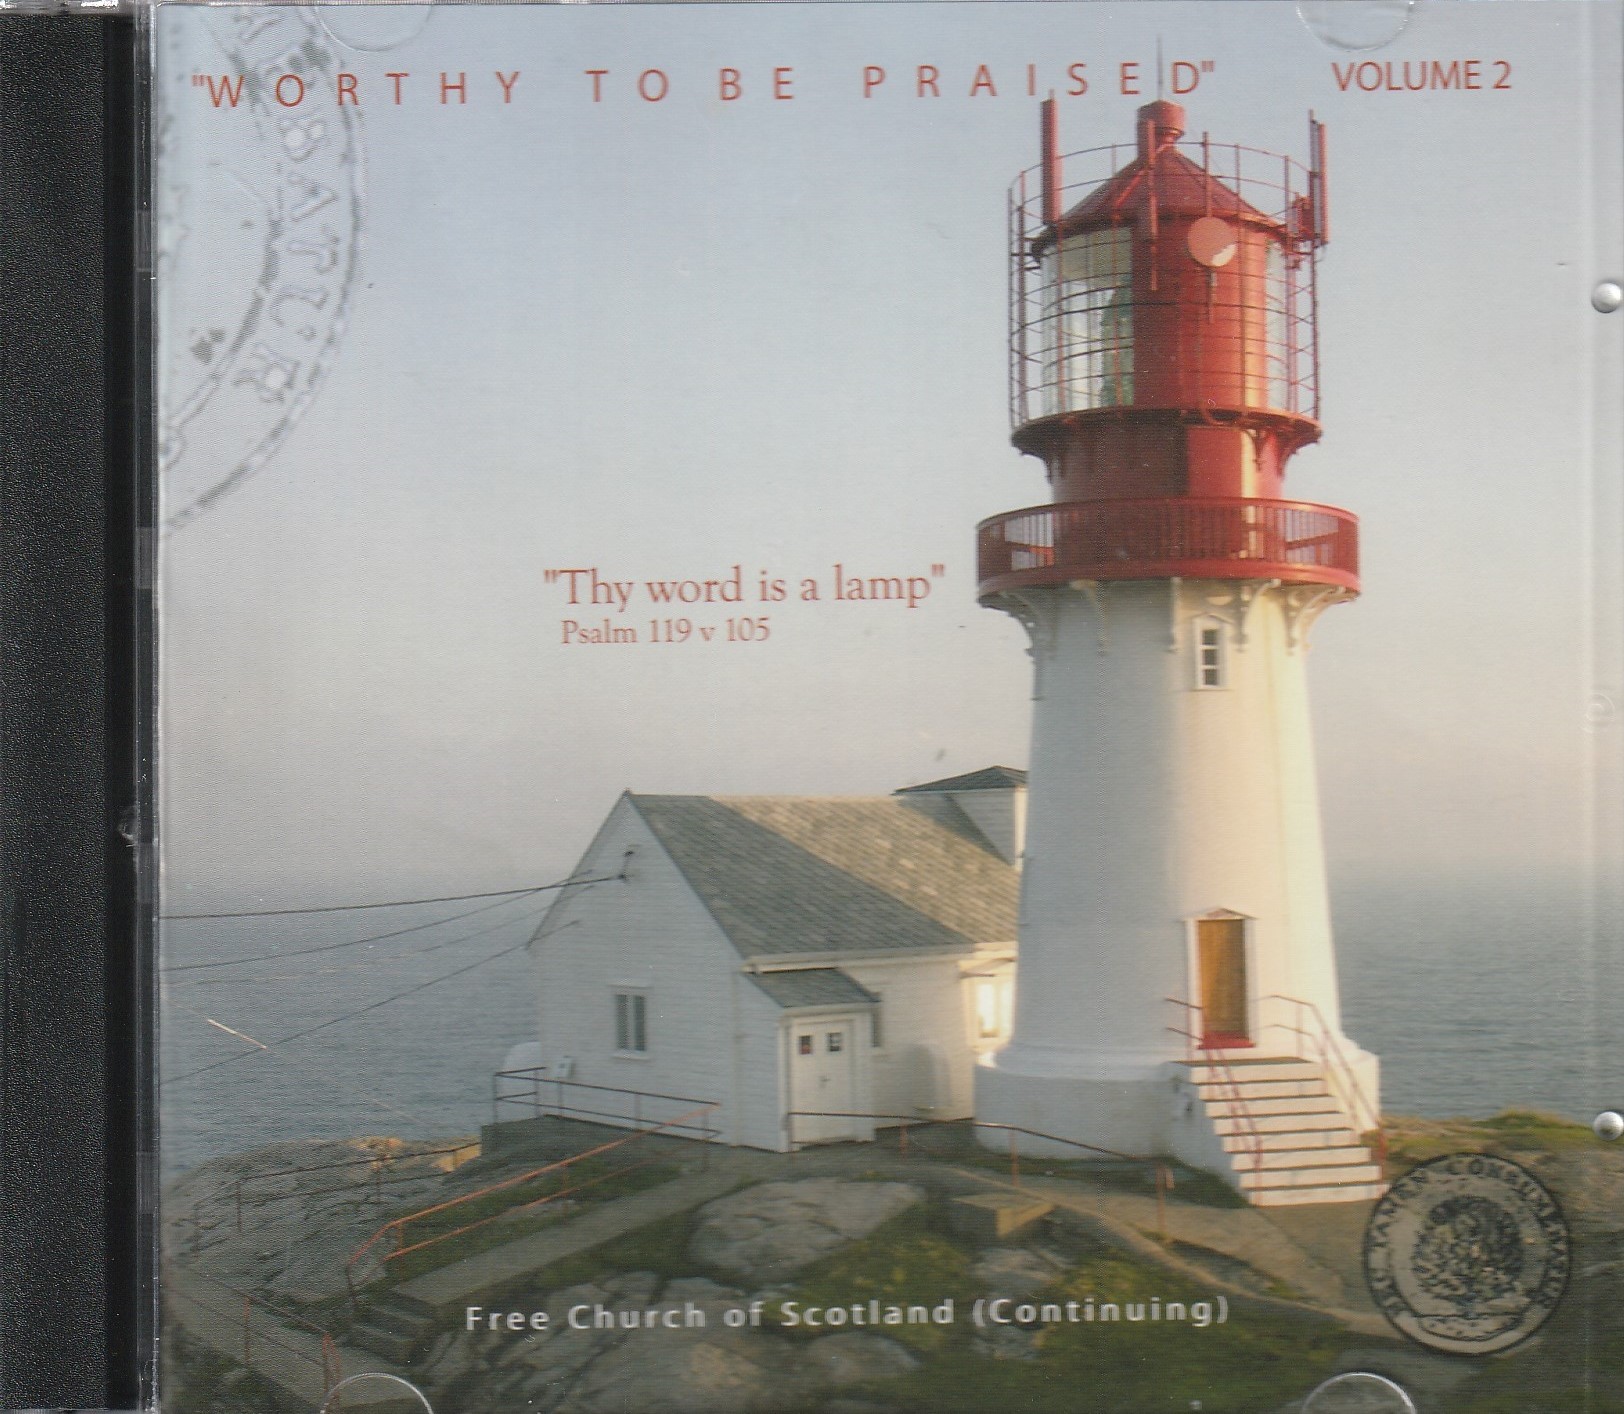 Worthy to be Praised Vol. 2 CD